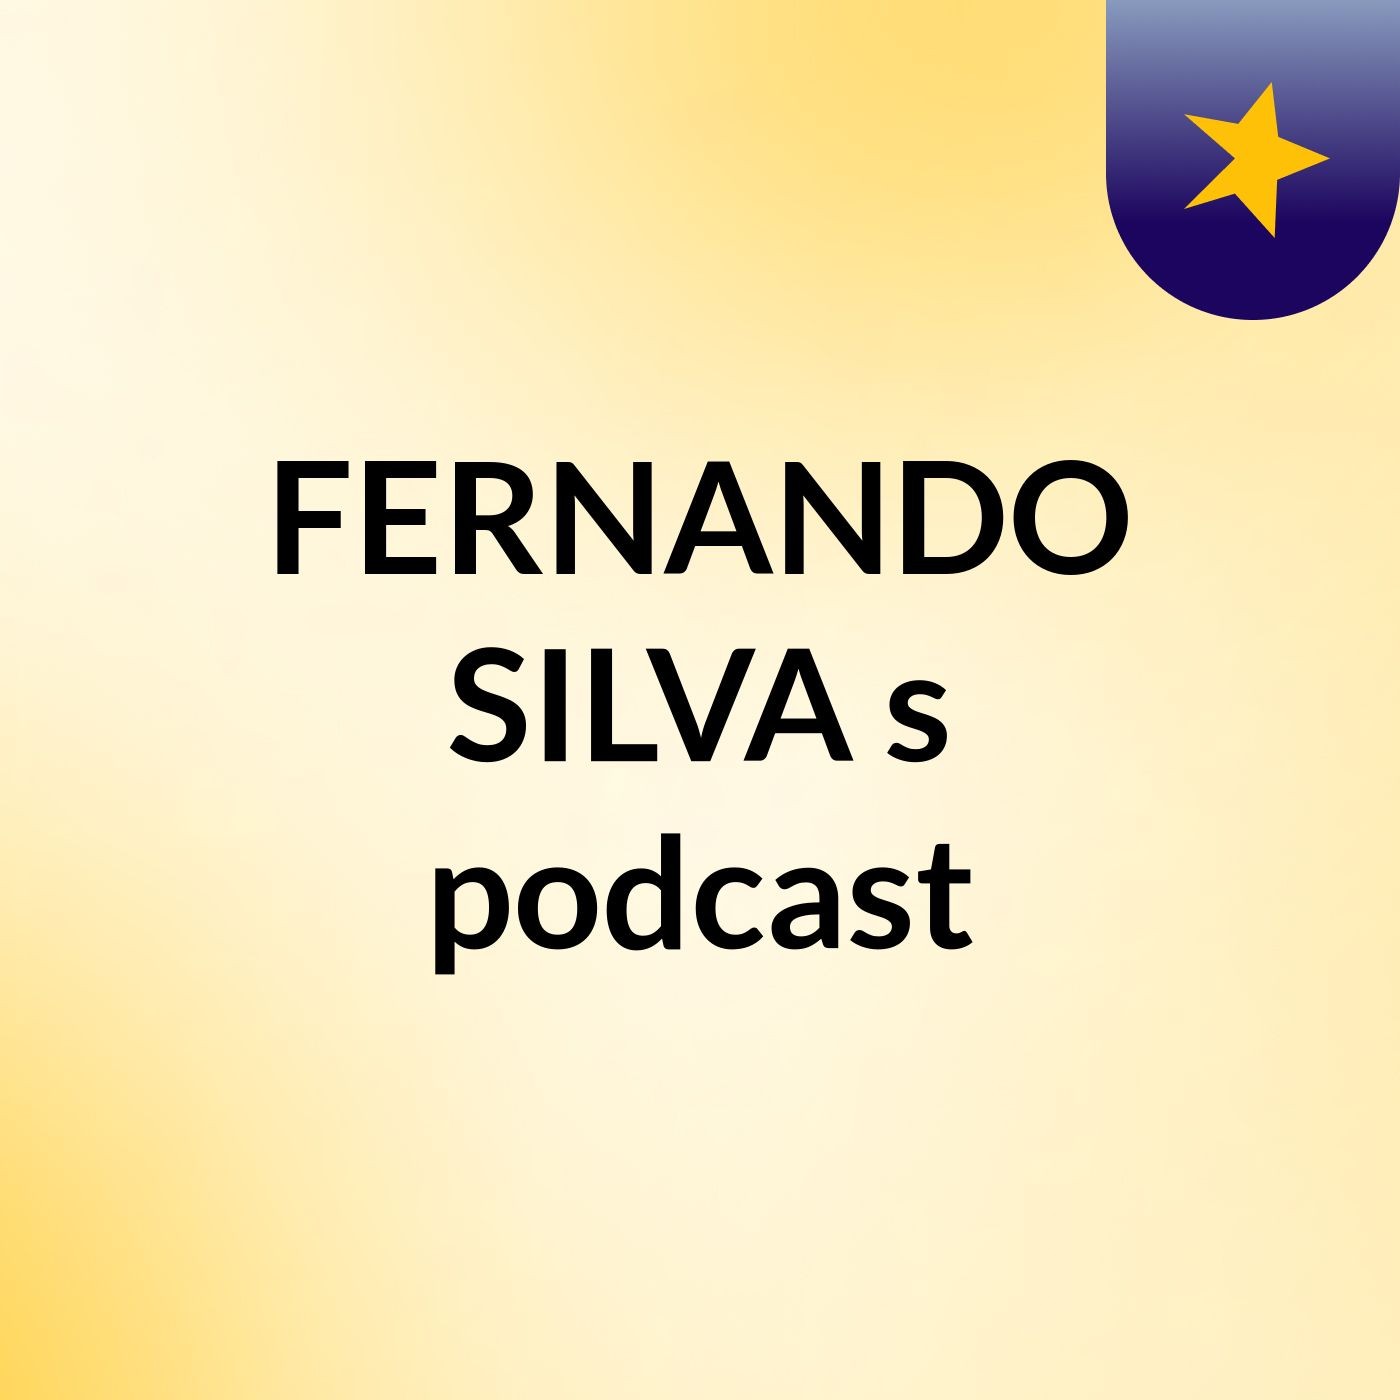 Episódio 4 - FERNANDO SILVA's podcast